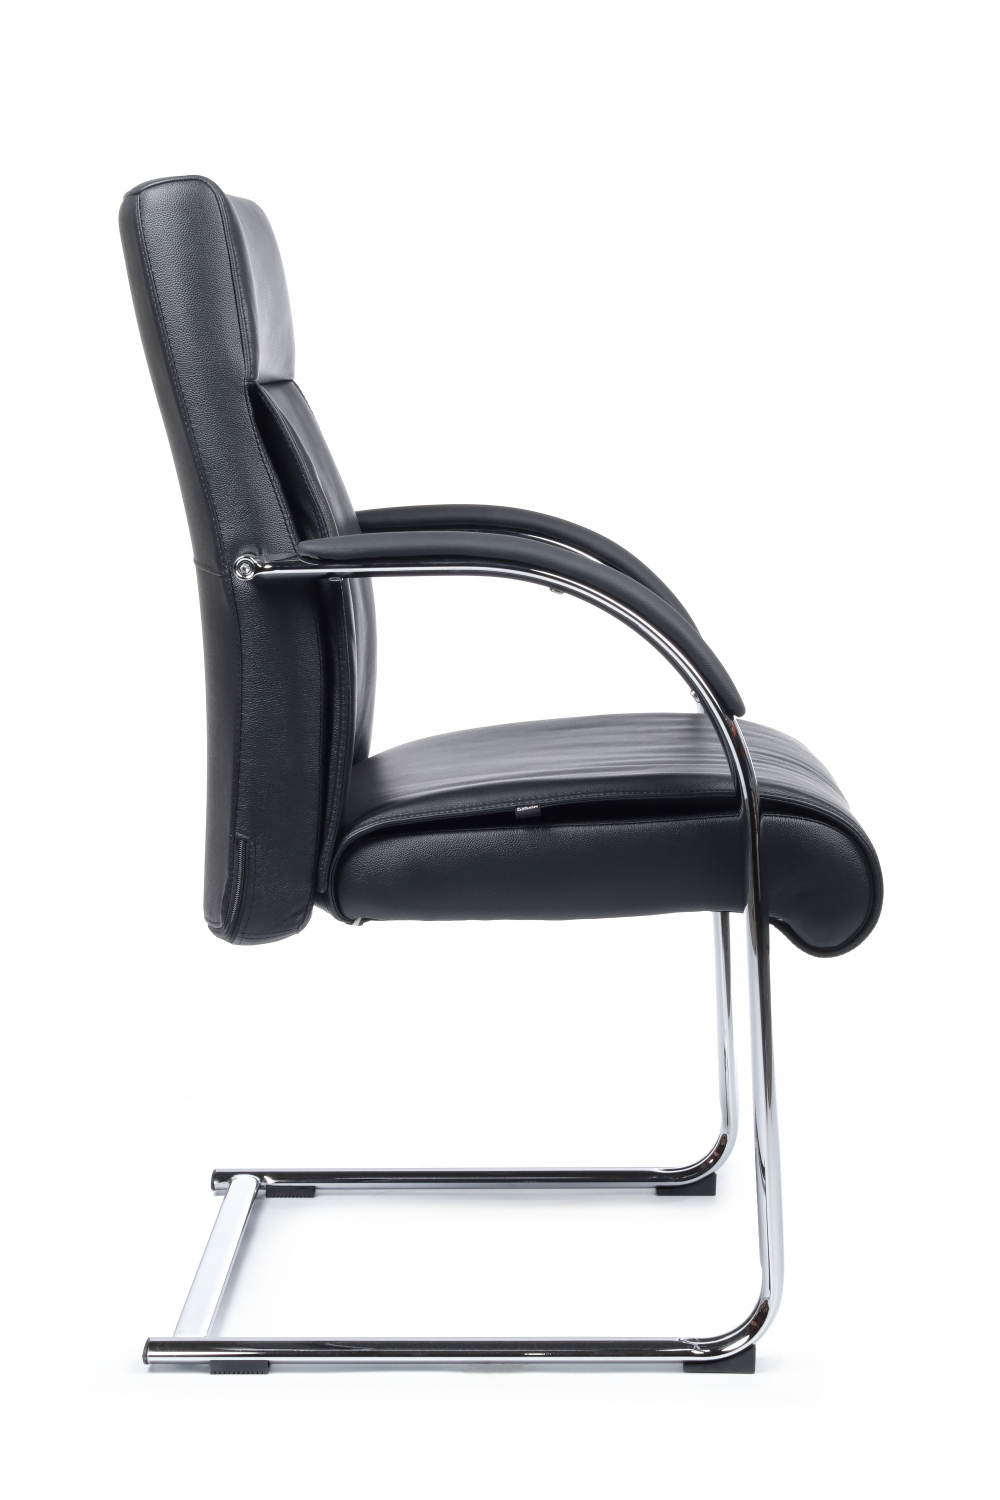 Конференц кресло RIVA DESIGN Gaston-SF 9364 натуральная кожа Черный